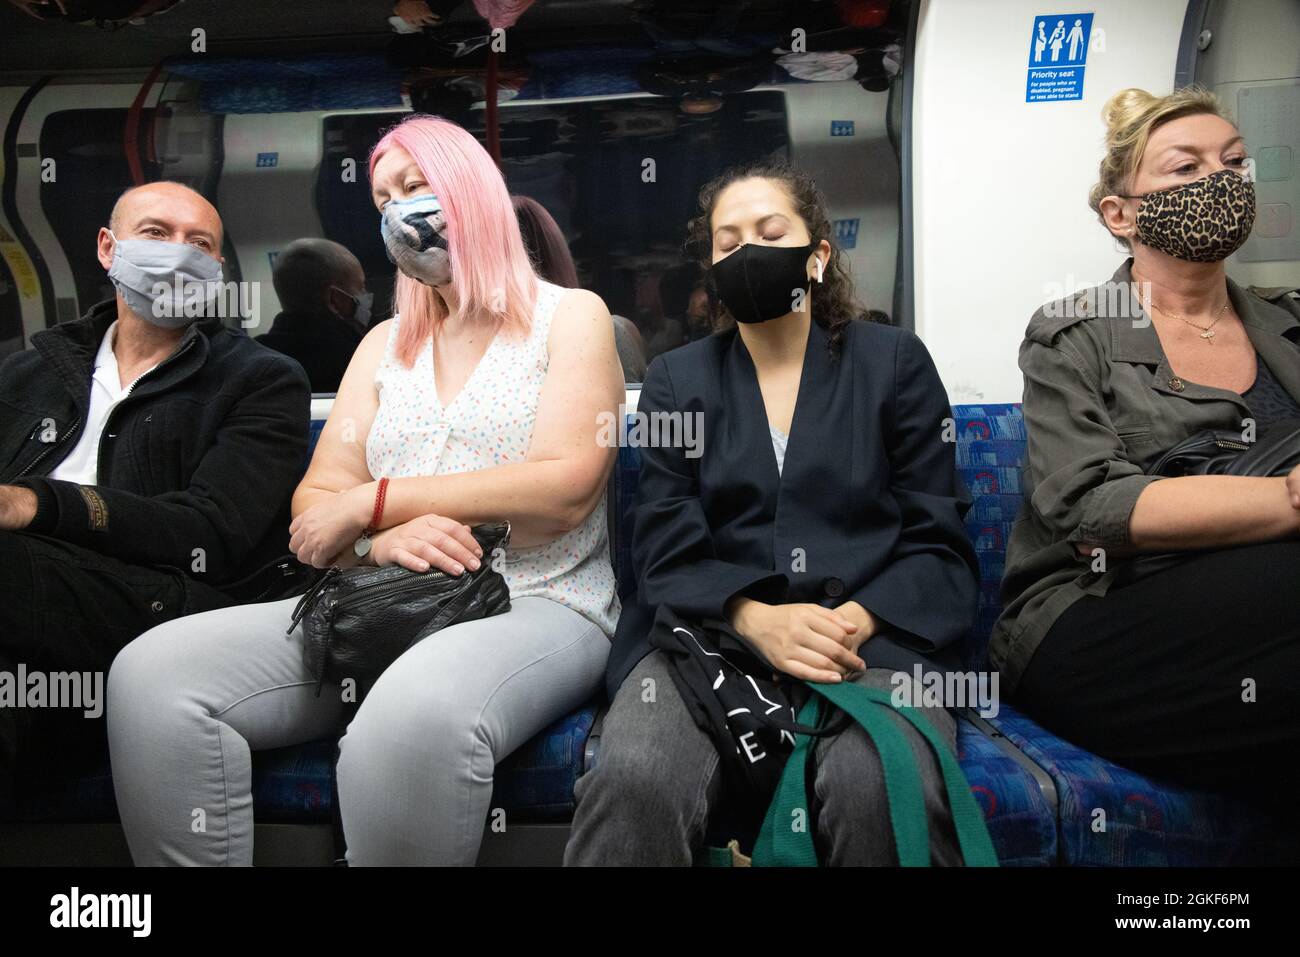 Covid 19 Reino Unido; personas que usan máscaras durante la pandemia COVID 19 viajando por el metro de Londres, Londres Reino Unido Foto de stock